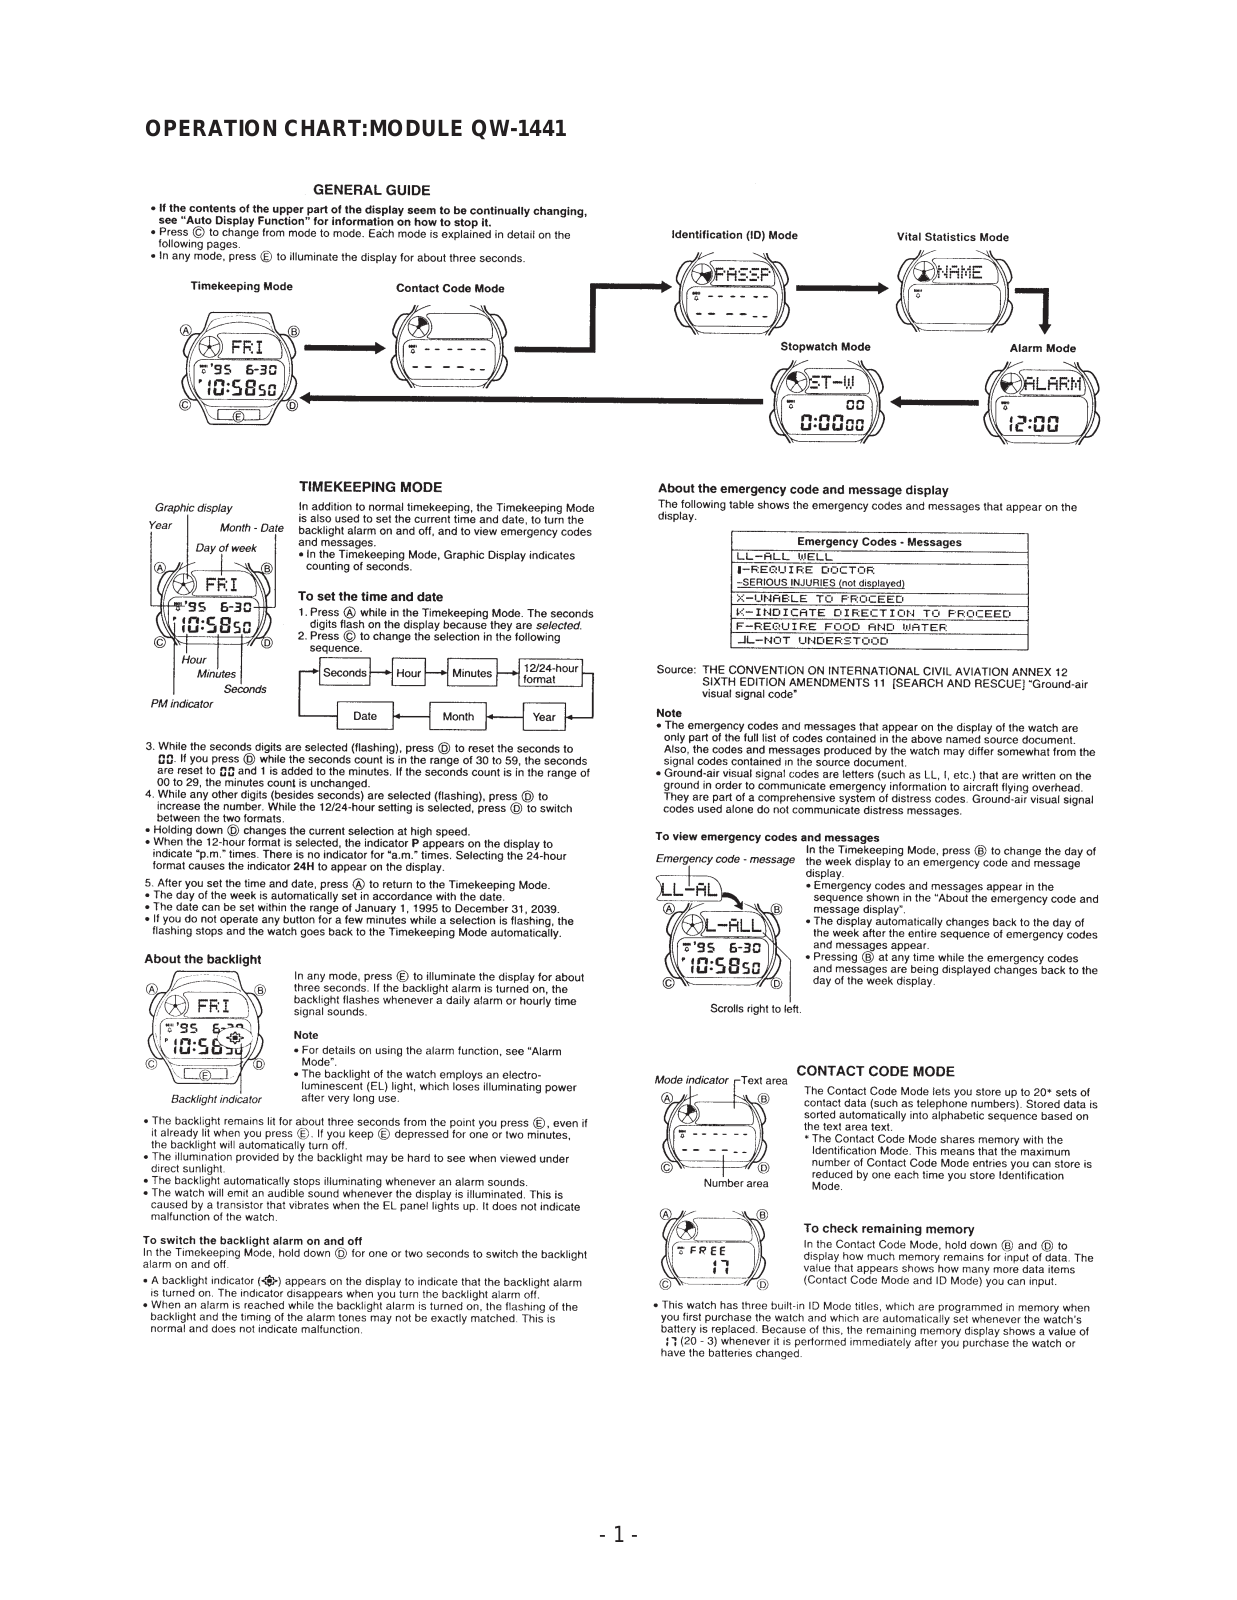 Casio QW-1441 User Manual